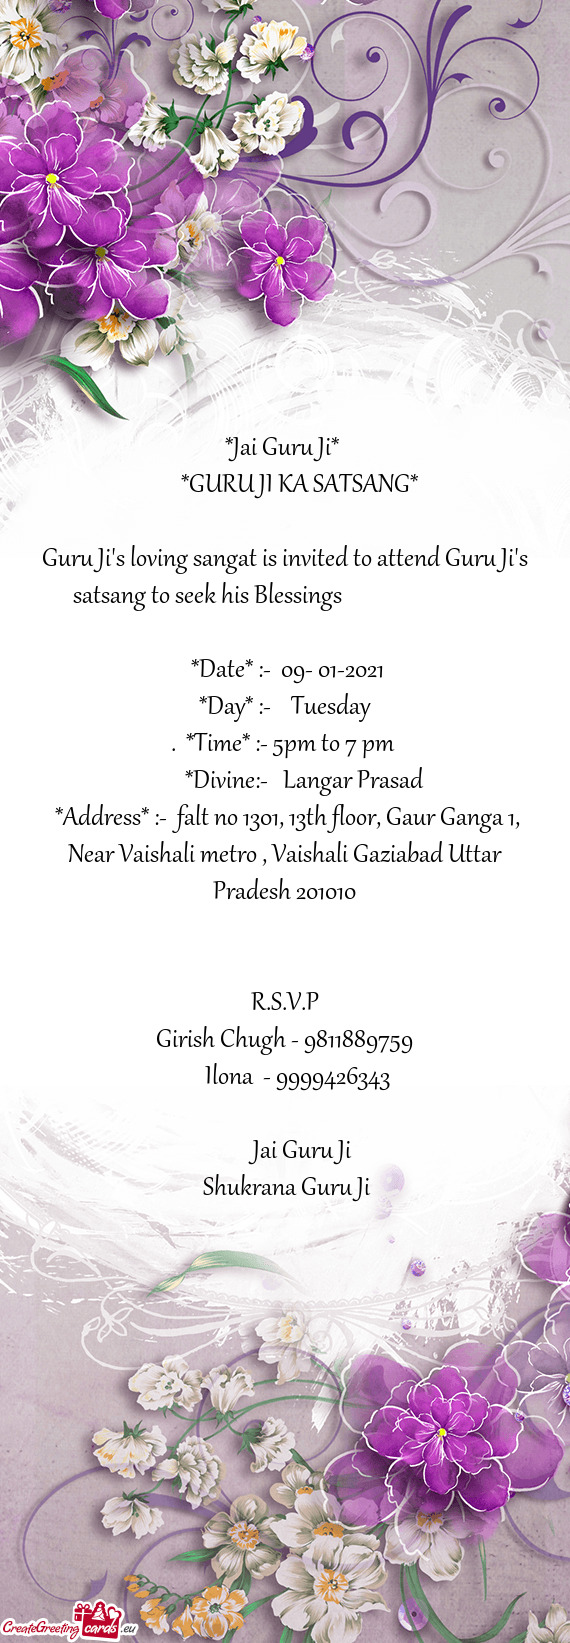 Guru Ji's loving sangat is invited to attend Guru Ji's satsang to seek his Blessings